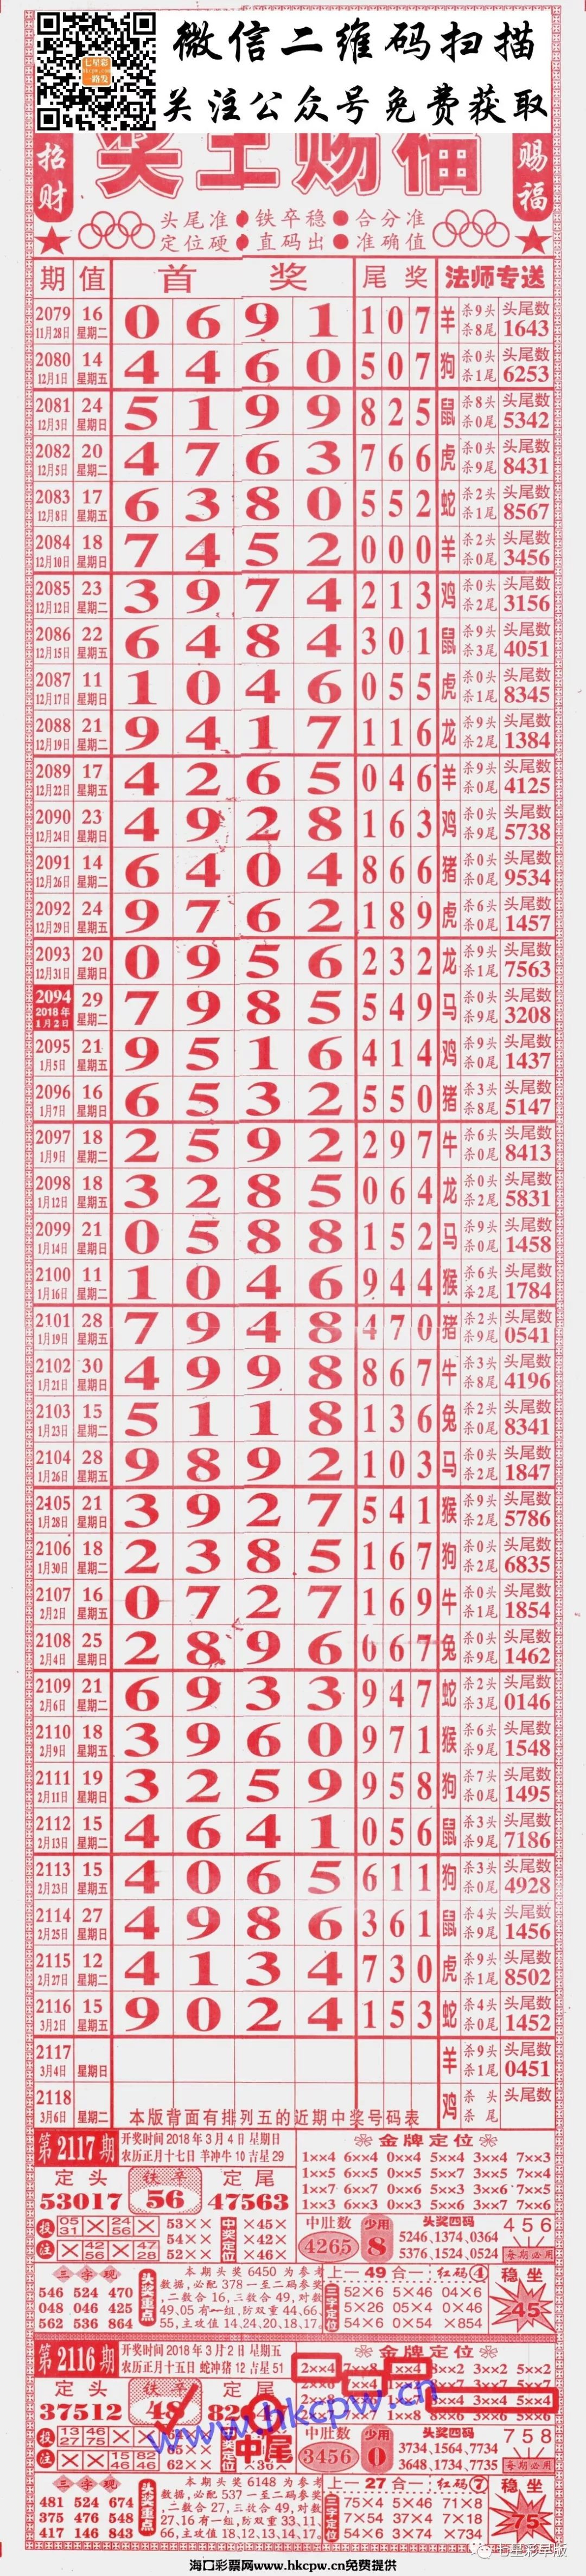 2117期七星彩长条:808,粤海局王,至尊,三点红,利民总版,新加坡对手等